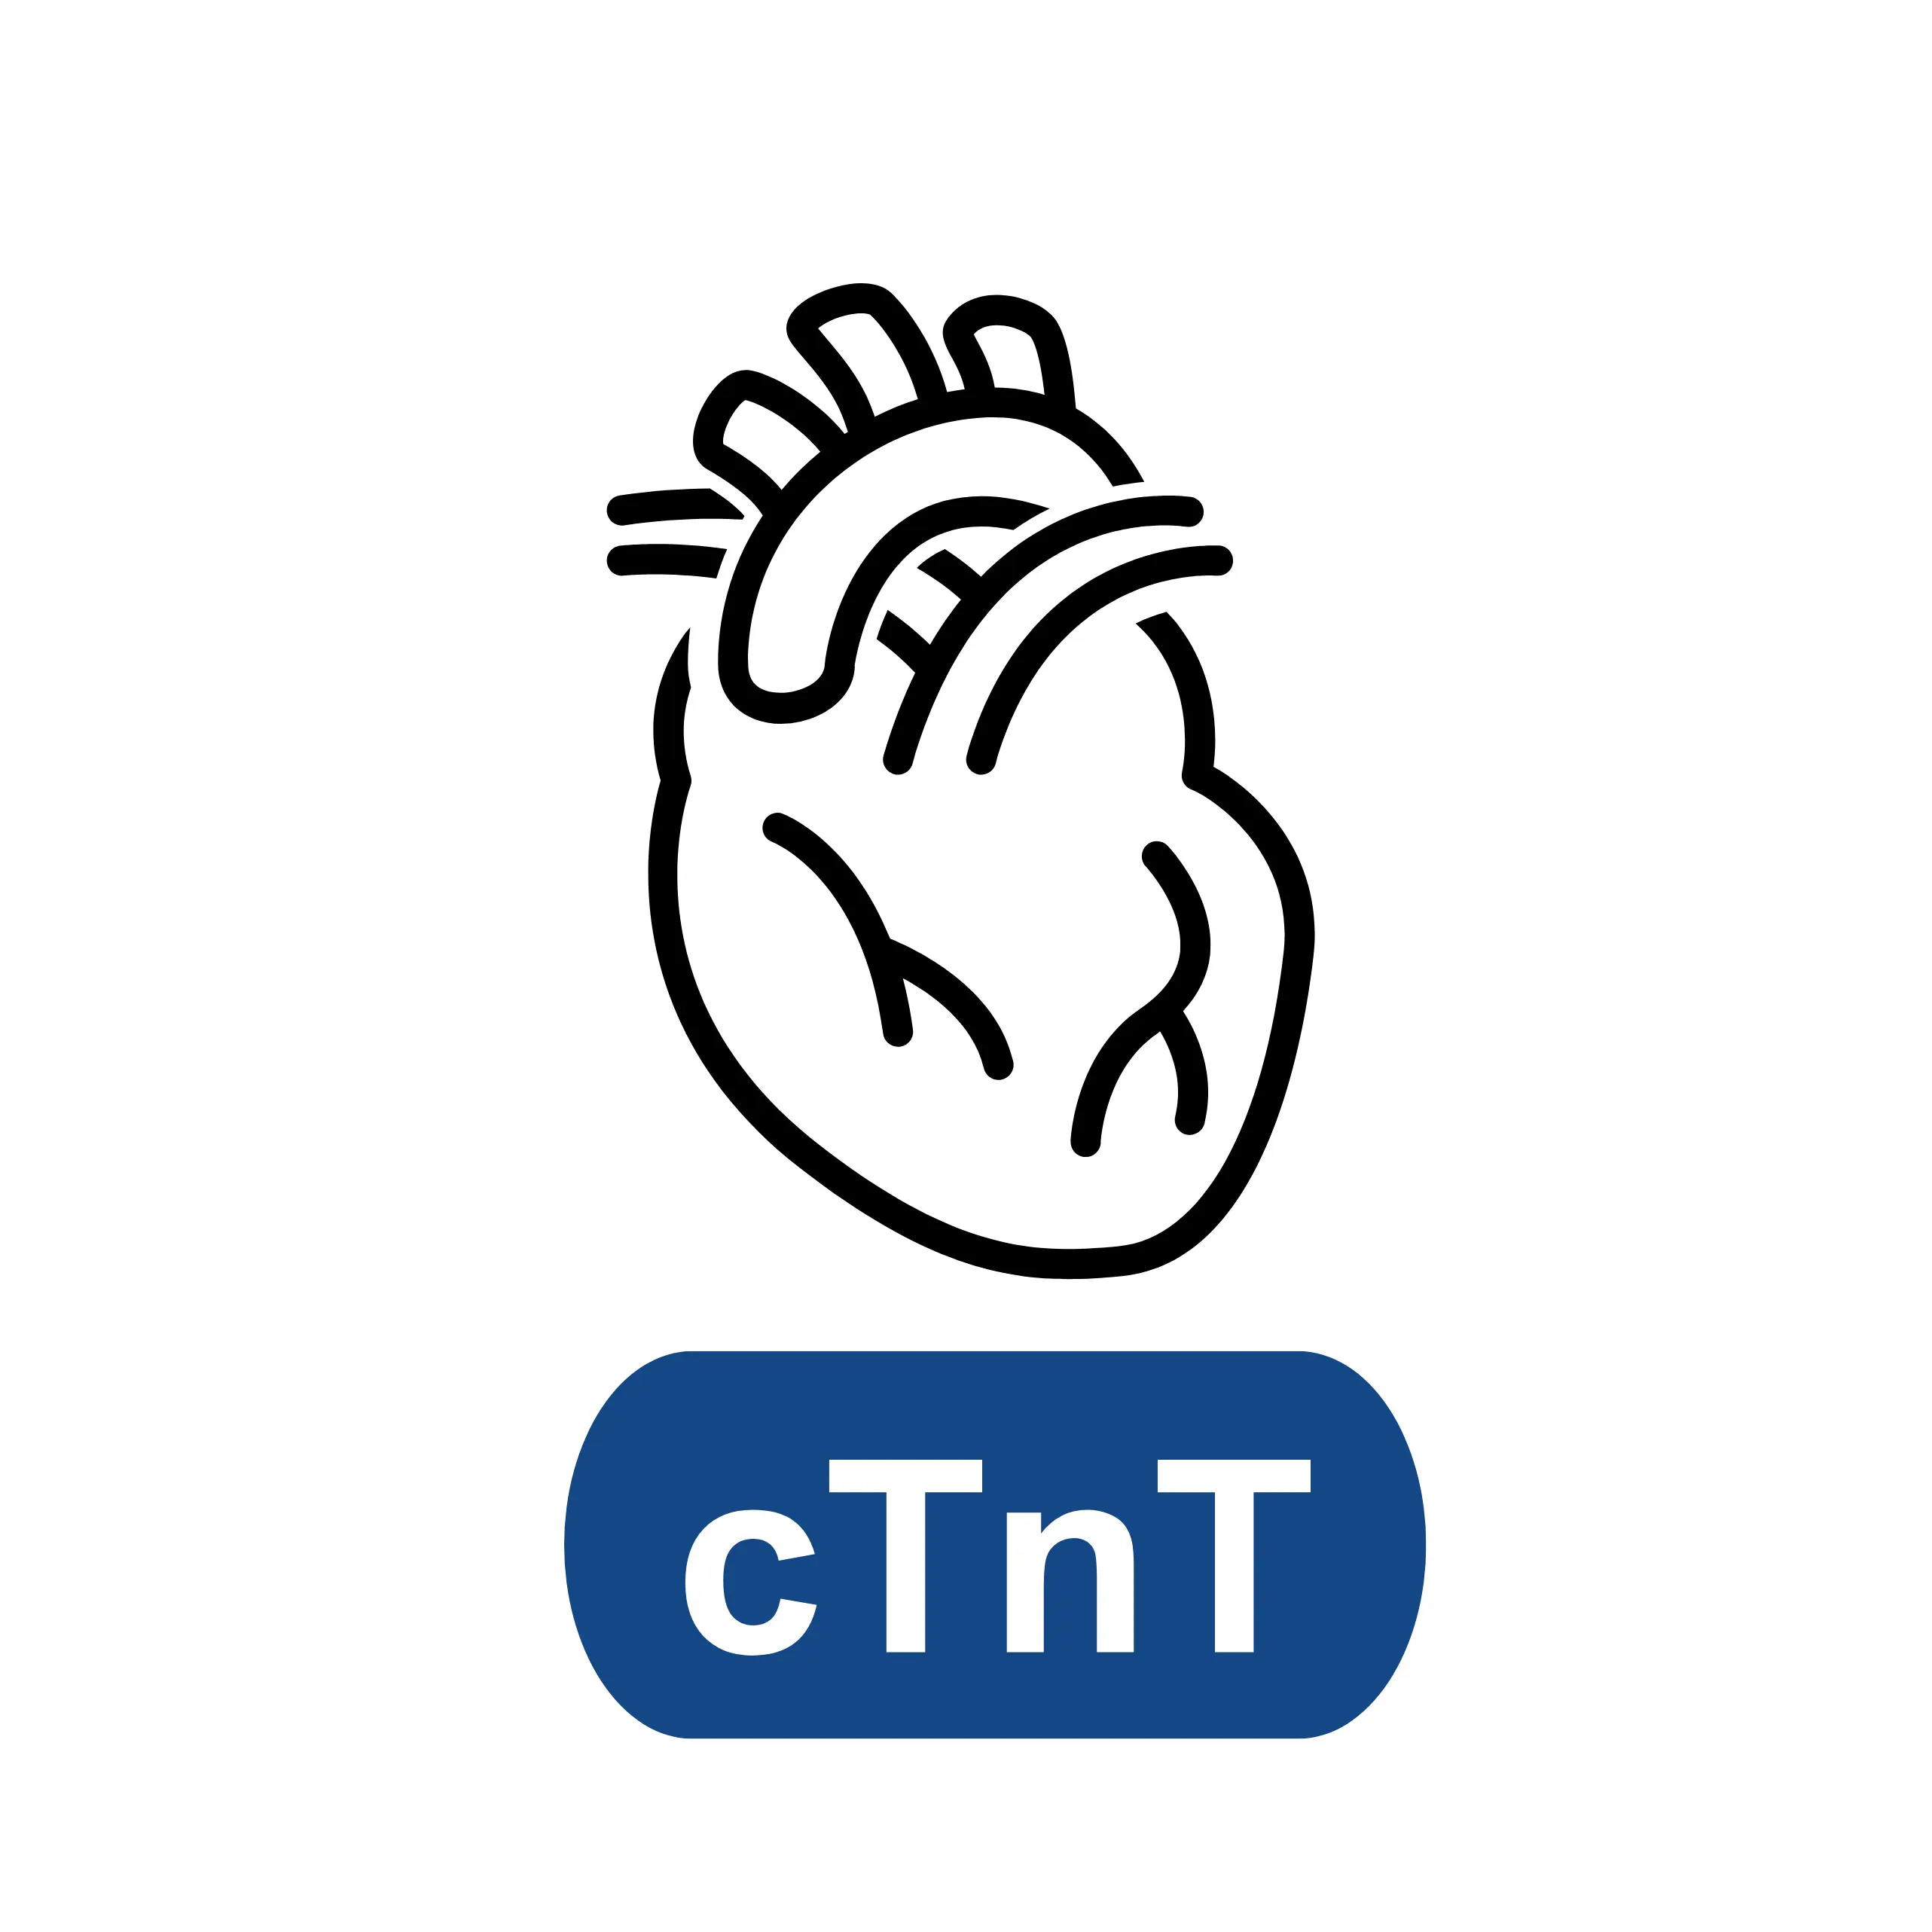 Cardiac Troponin T (cTnT)